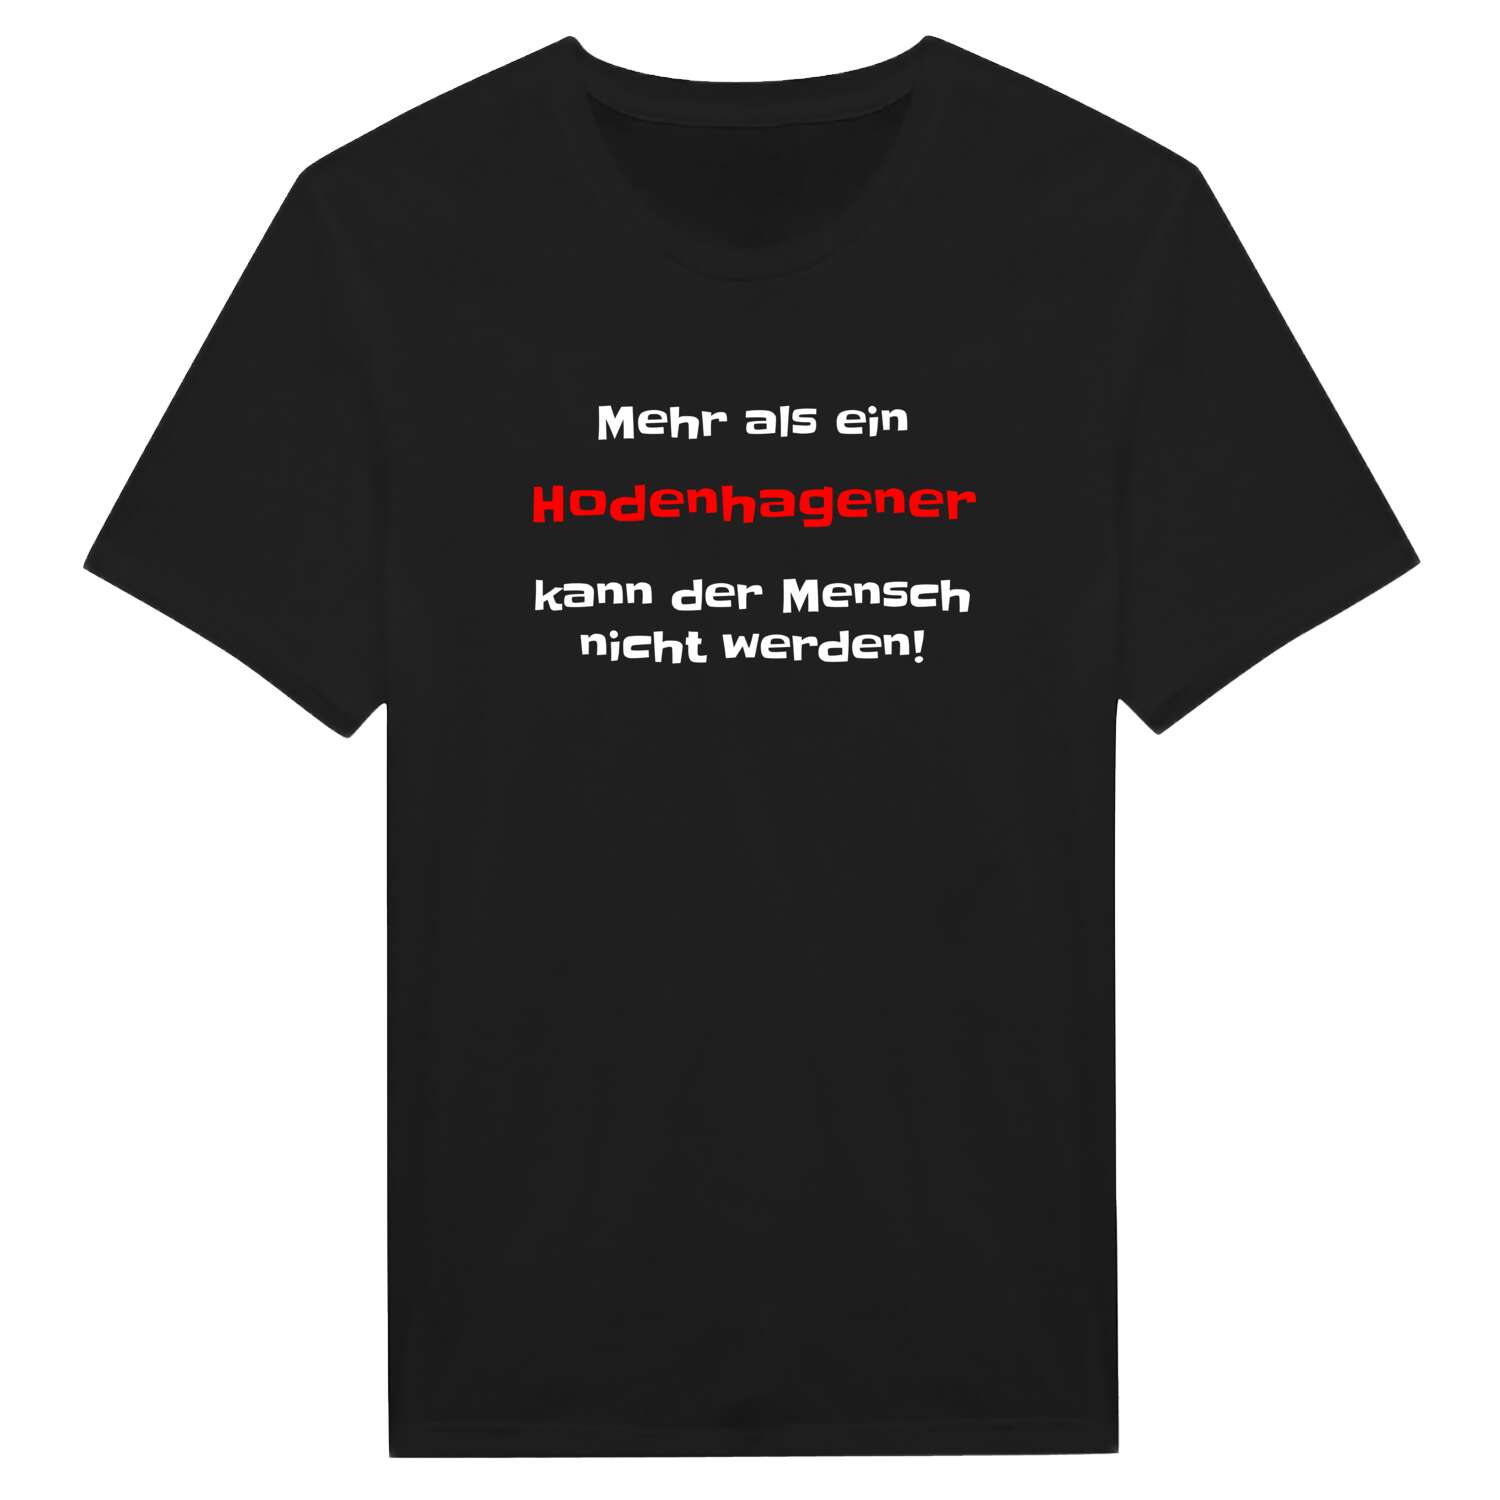 Hodenhagen T-Shirt »Mehr als ein«